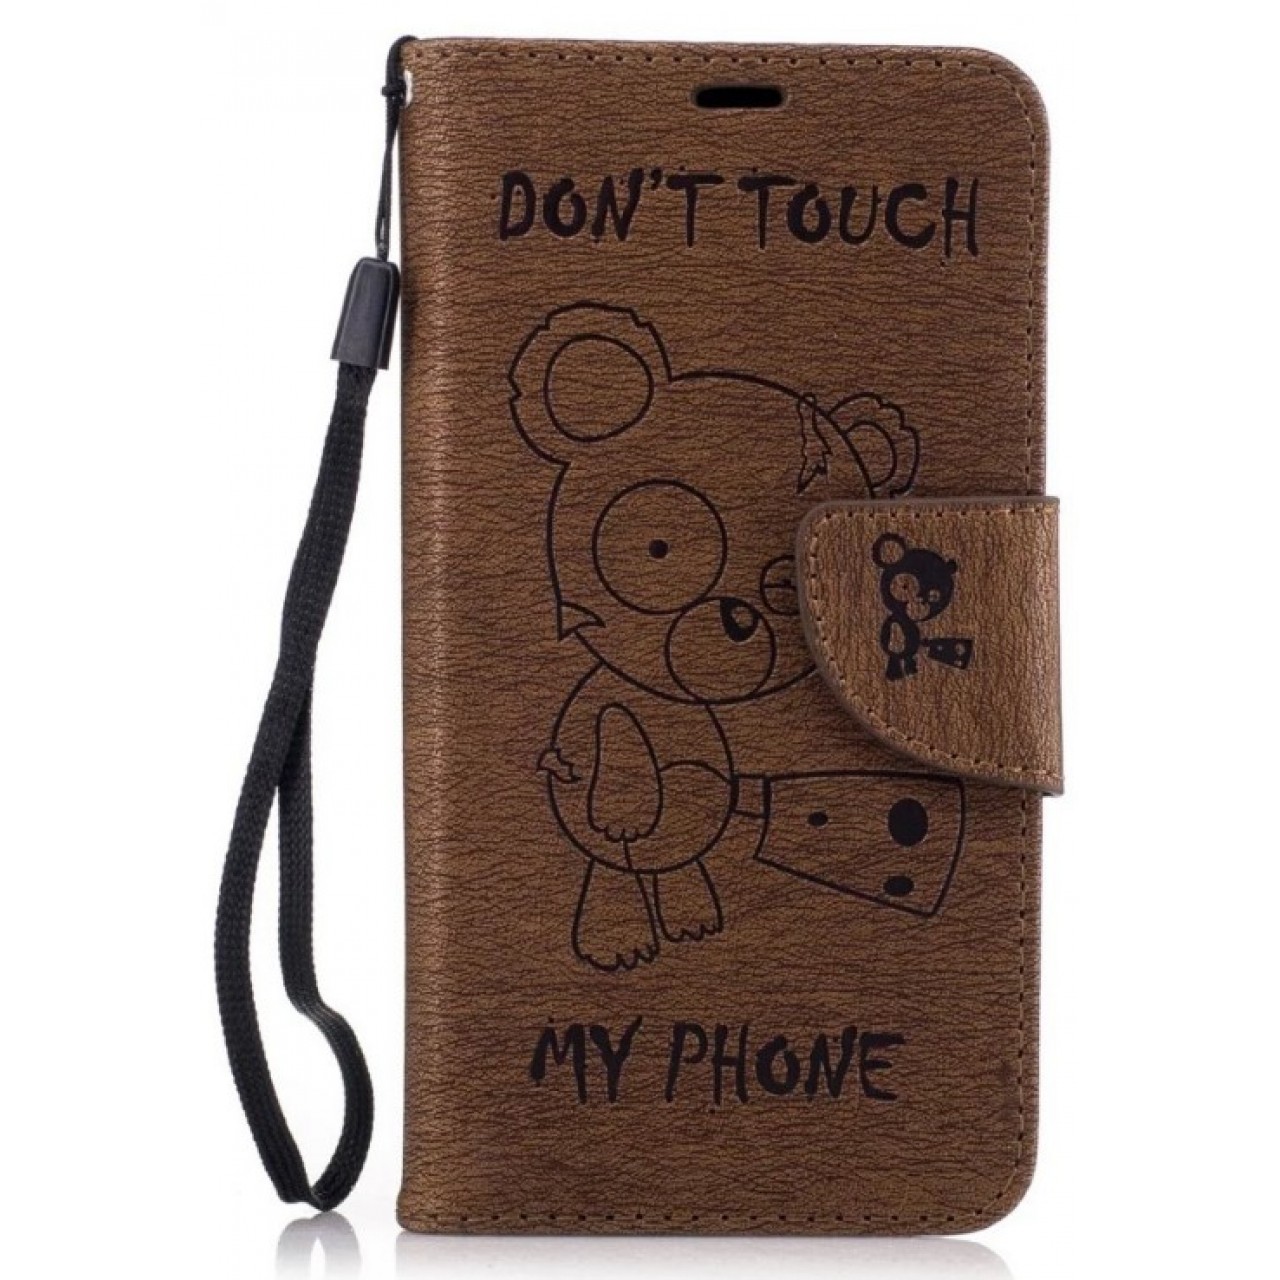 Θήκη Samsung Galaxy A3 2017 (Α320F) PU Leather Πορτοφόλι flip Don t touch my phone - 2387 - Καφέ - OEM